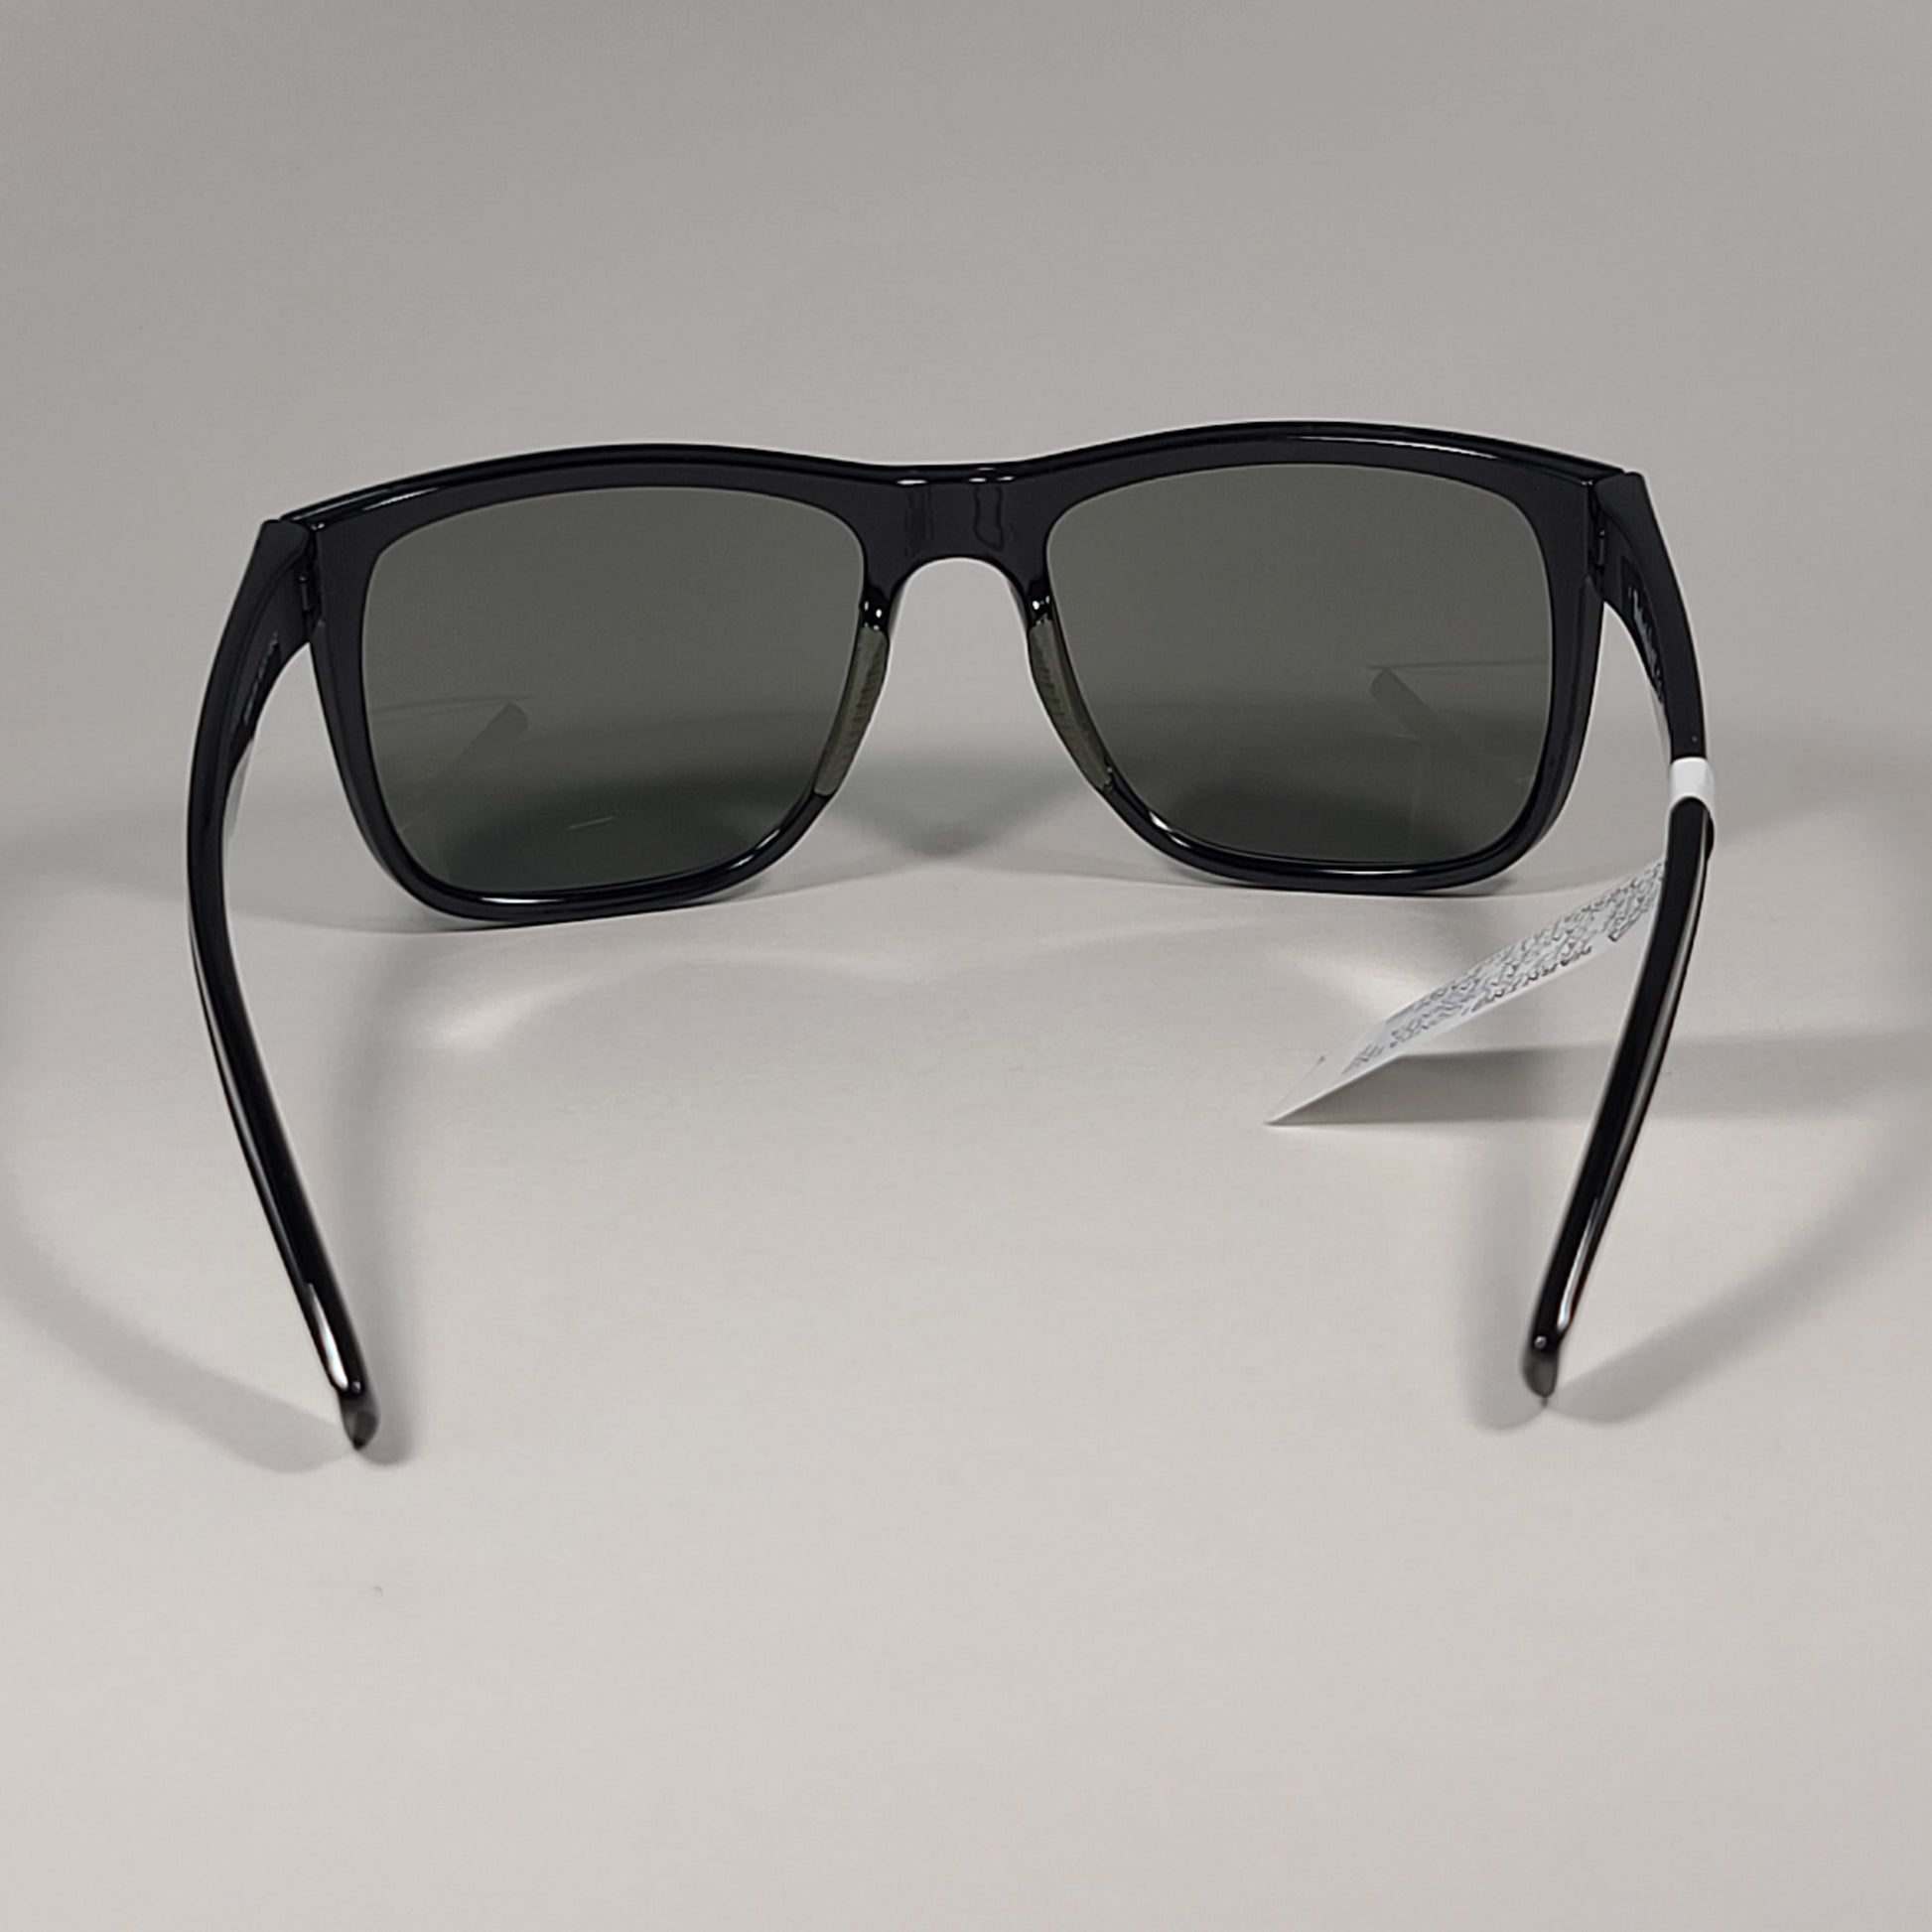 Timberland Men's Square Sport TB7269 01N Sunglasses Shiny Black Green Lens